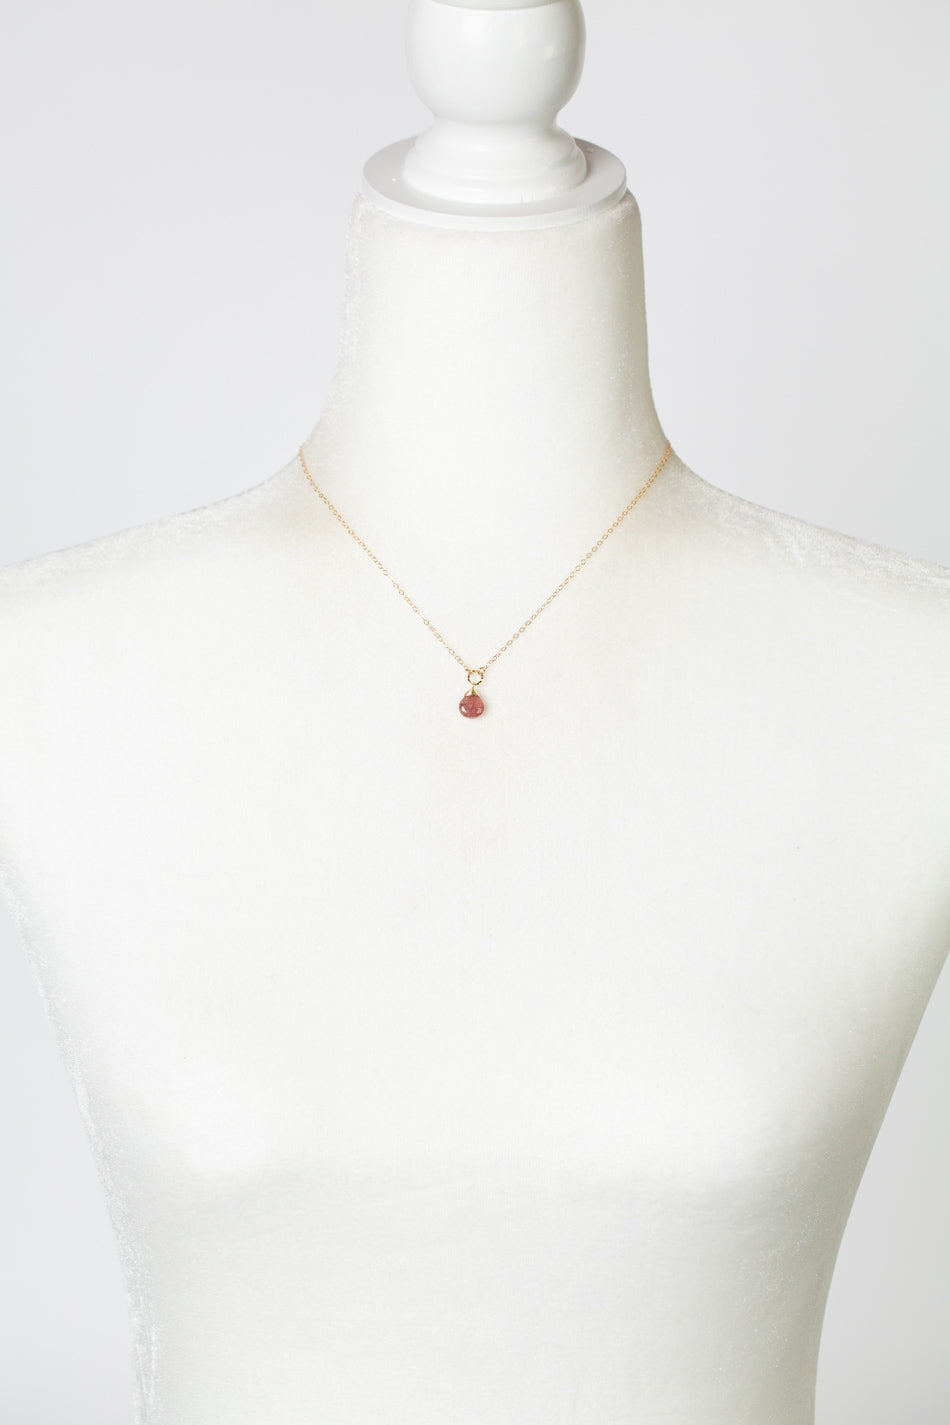 Divinity 15-17" Faceted Strawberry Quartz Briolette Simple Necklace